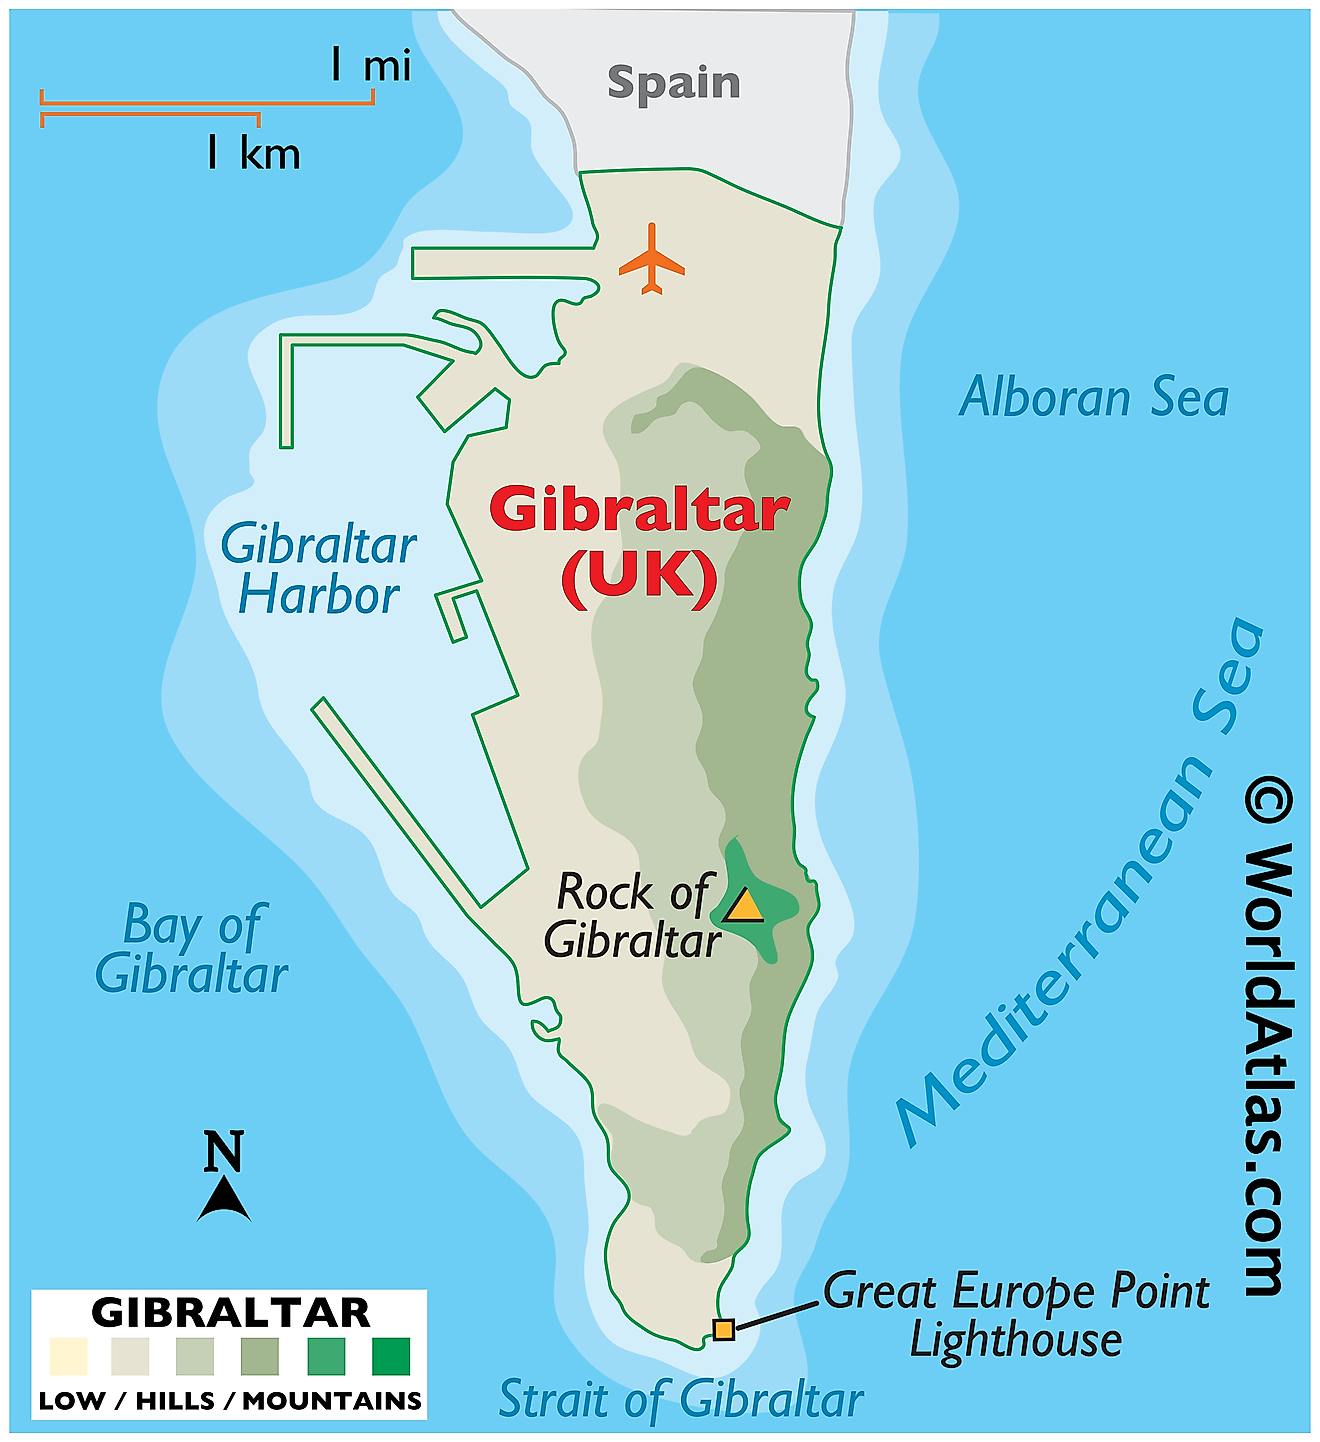 Mapa Físico de Gibraltar. Muestra las características físicas de Gibraltar, incluido "El Peñón".